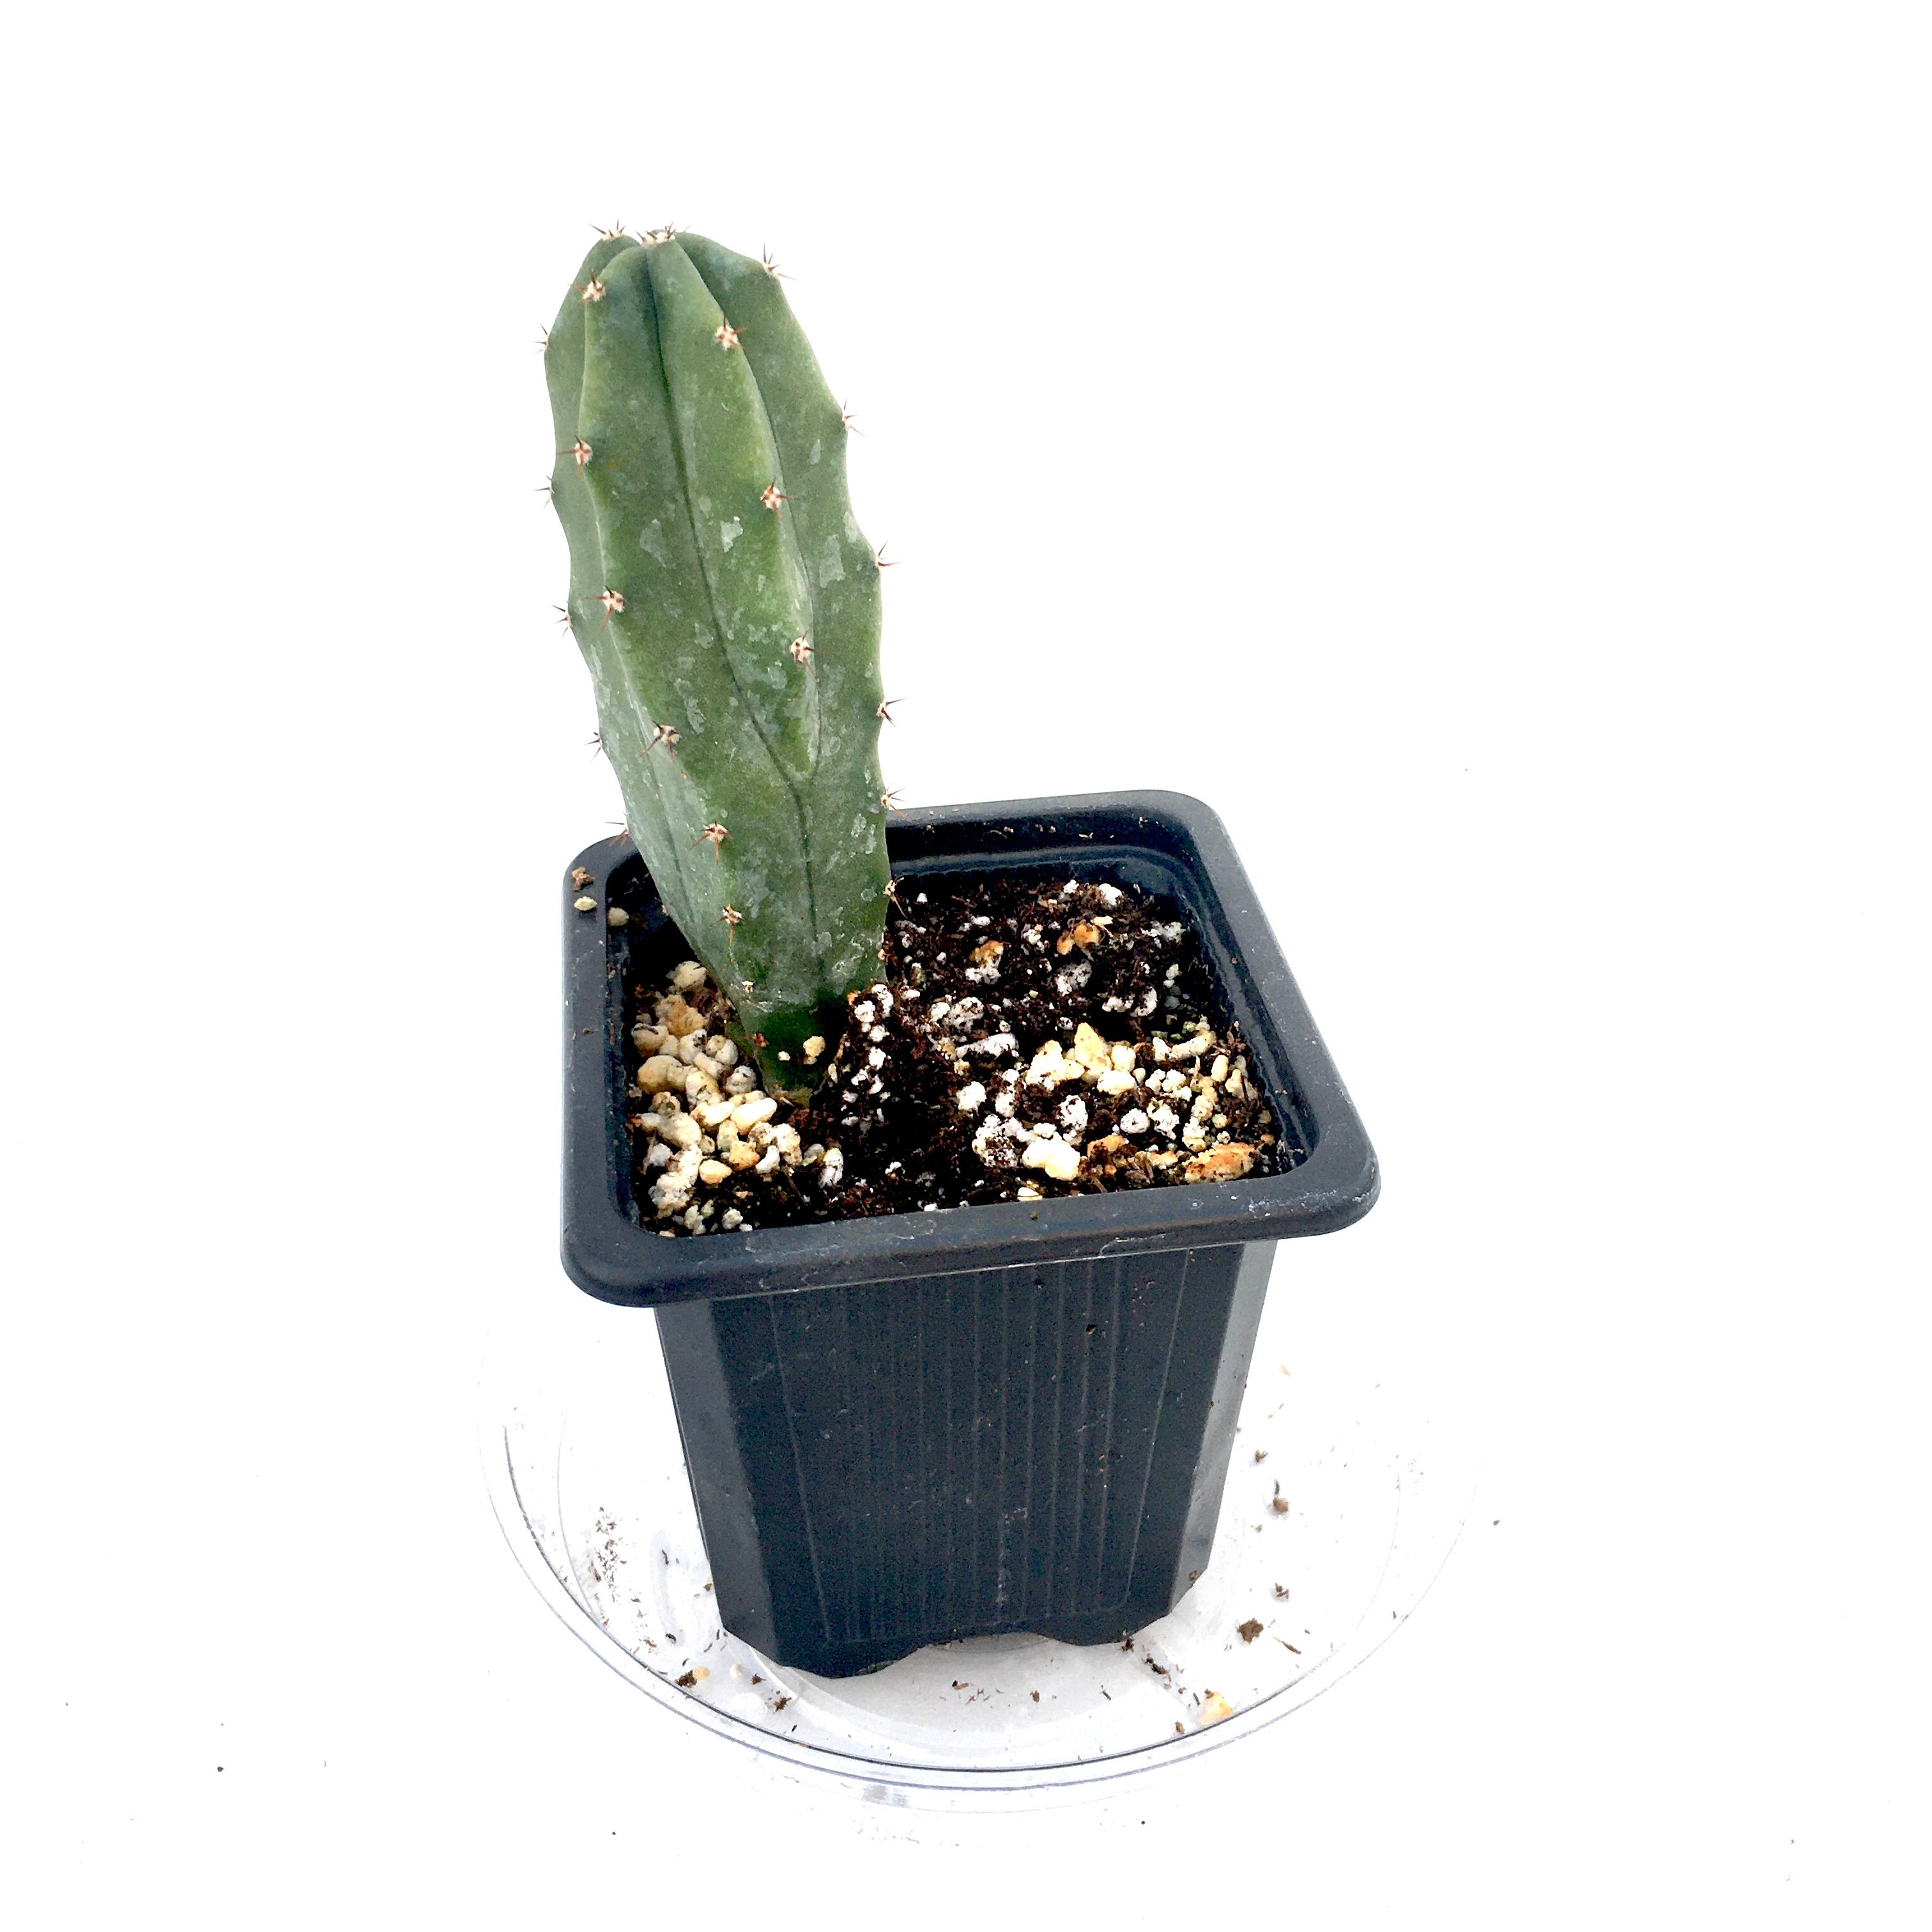 Cereus peruvianus cactus